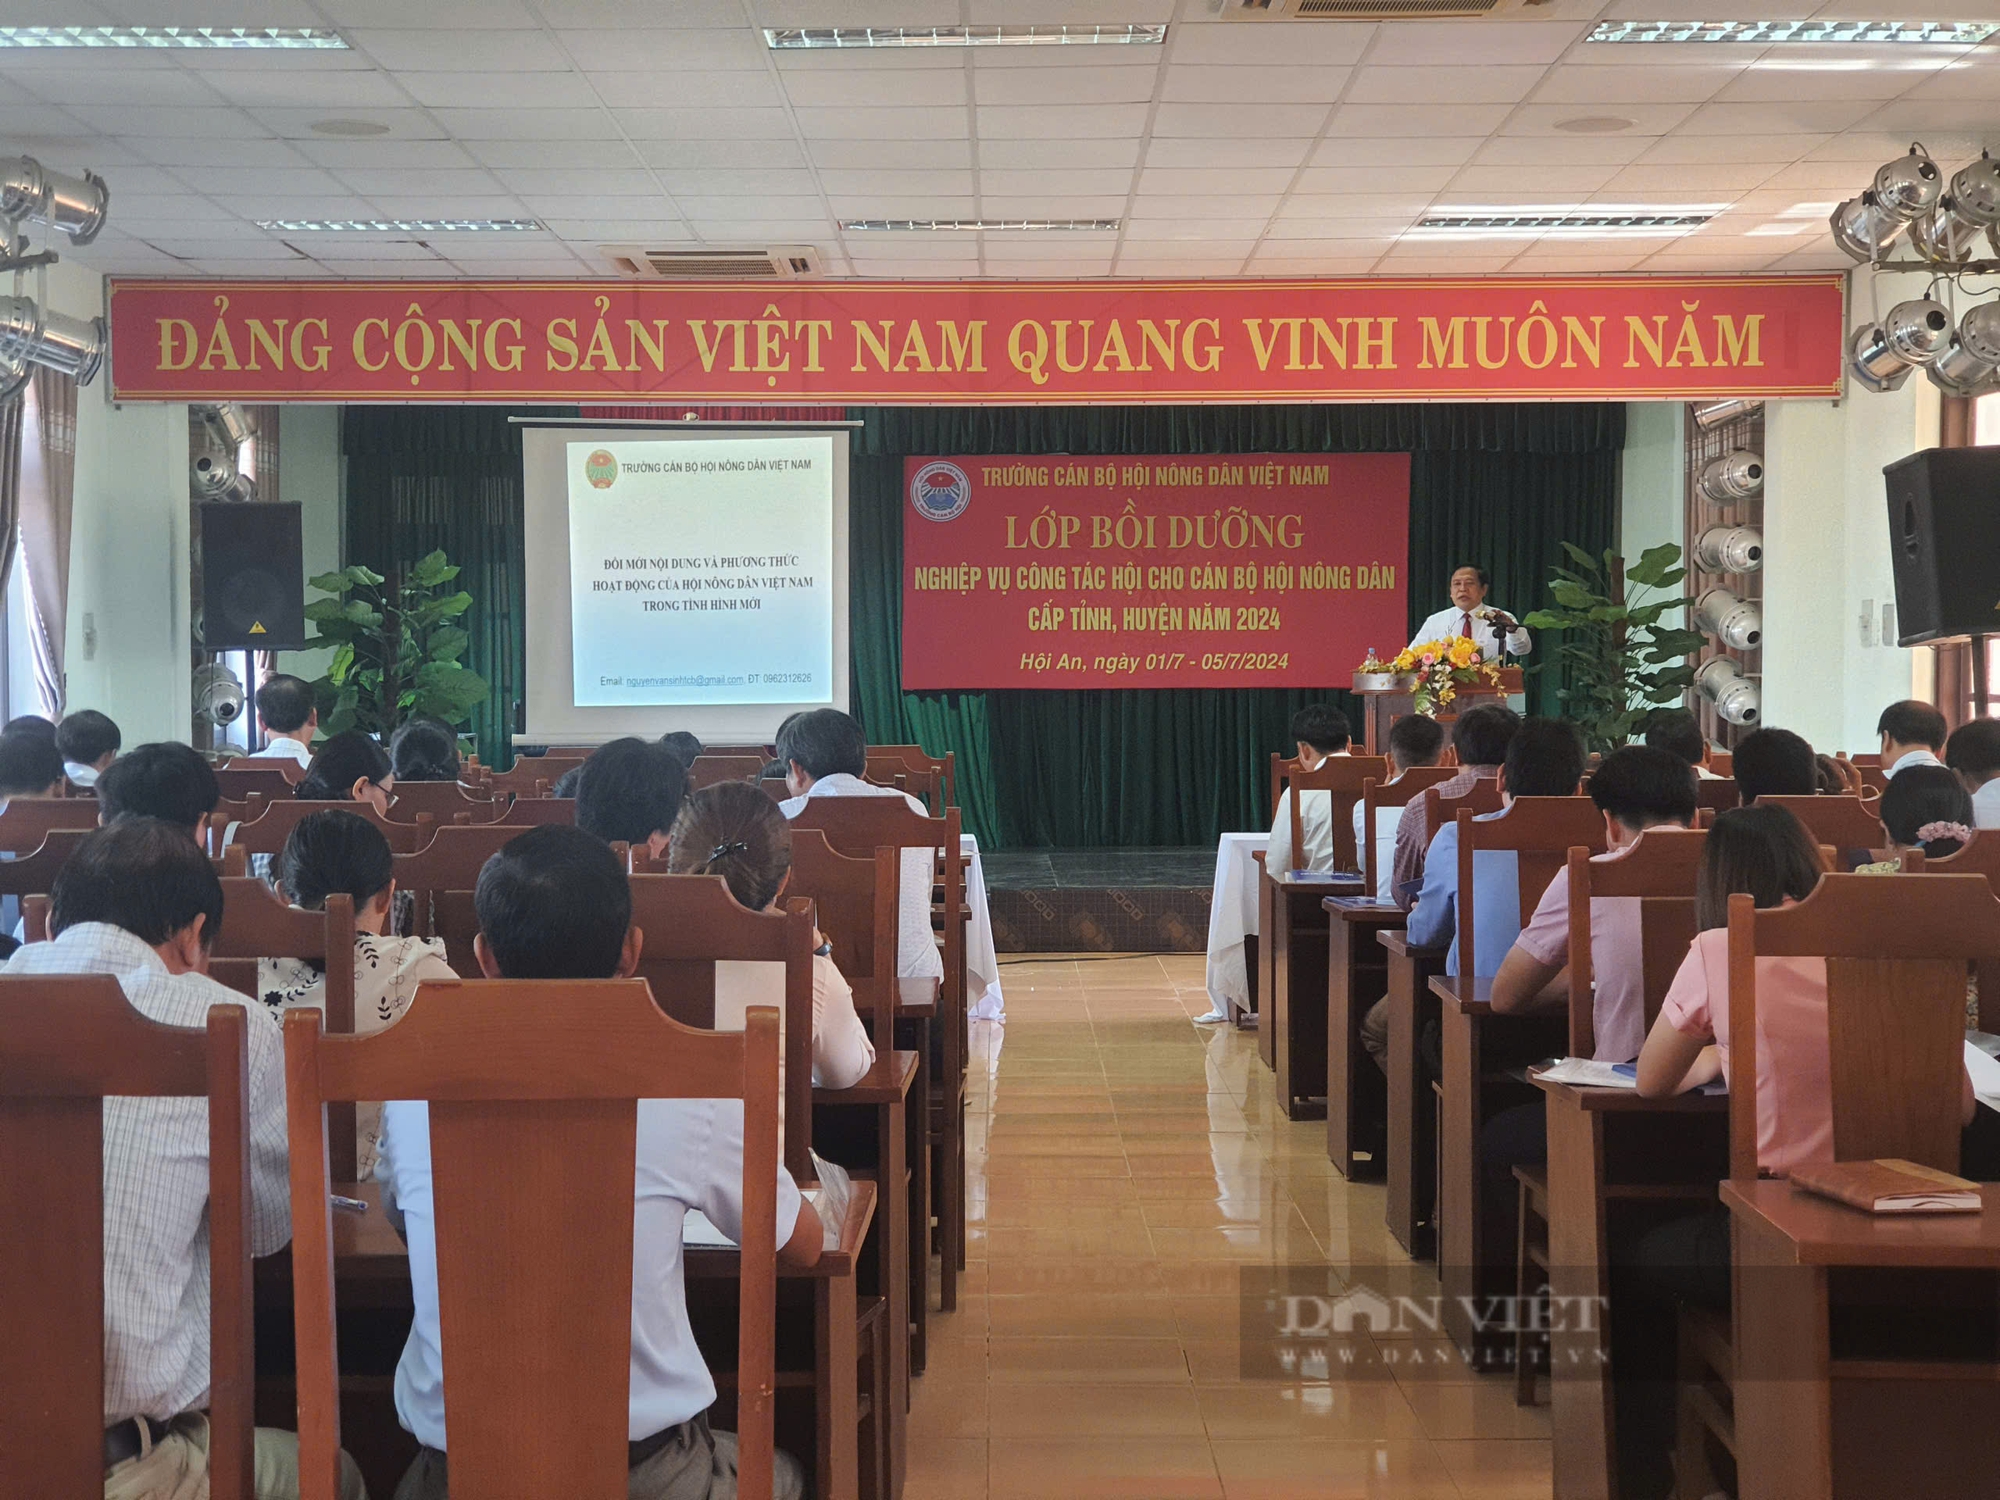 Trường Cán bộ Hội NDVN mở lớp bồi dưỡng nghiệp vụ công tác Hội cho cán bộ Hội Nông dân cấp tỉnh, huyện năm 2024- Ảnh 5.